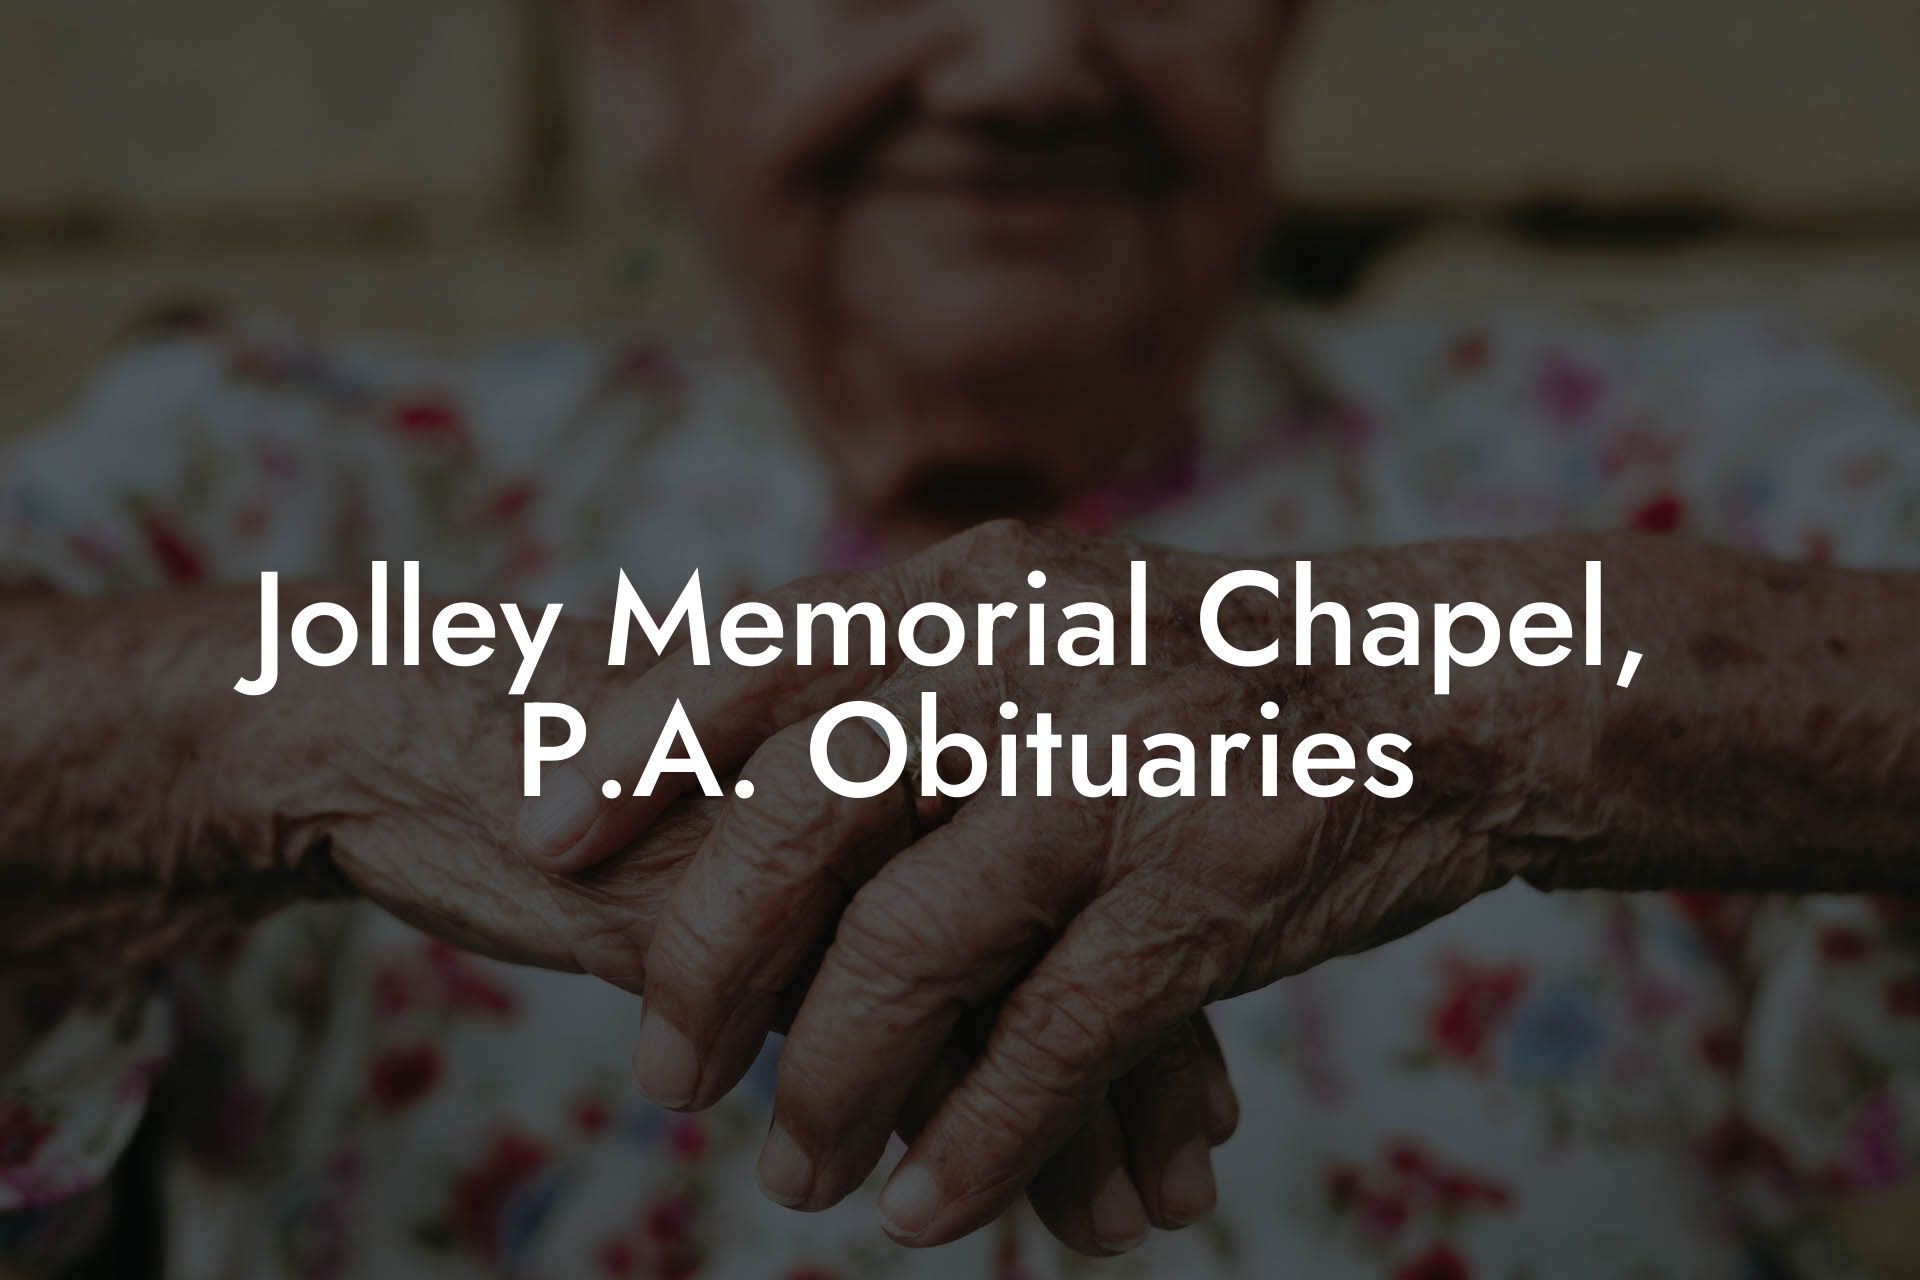 Jolley Memorial Chapel P.A. Obituaries